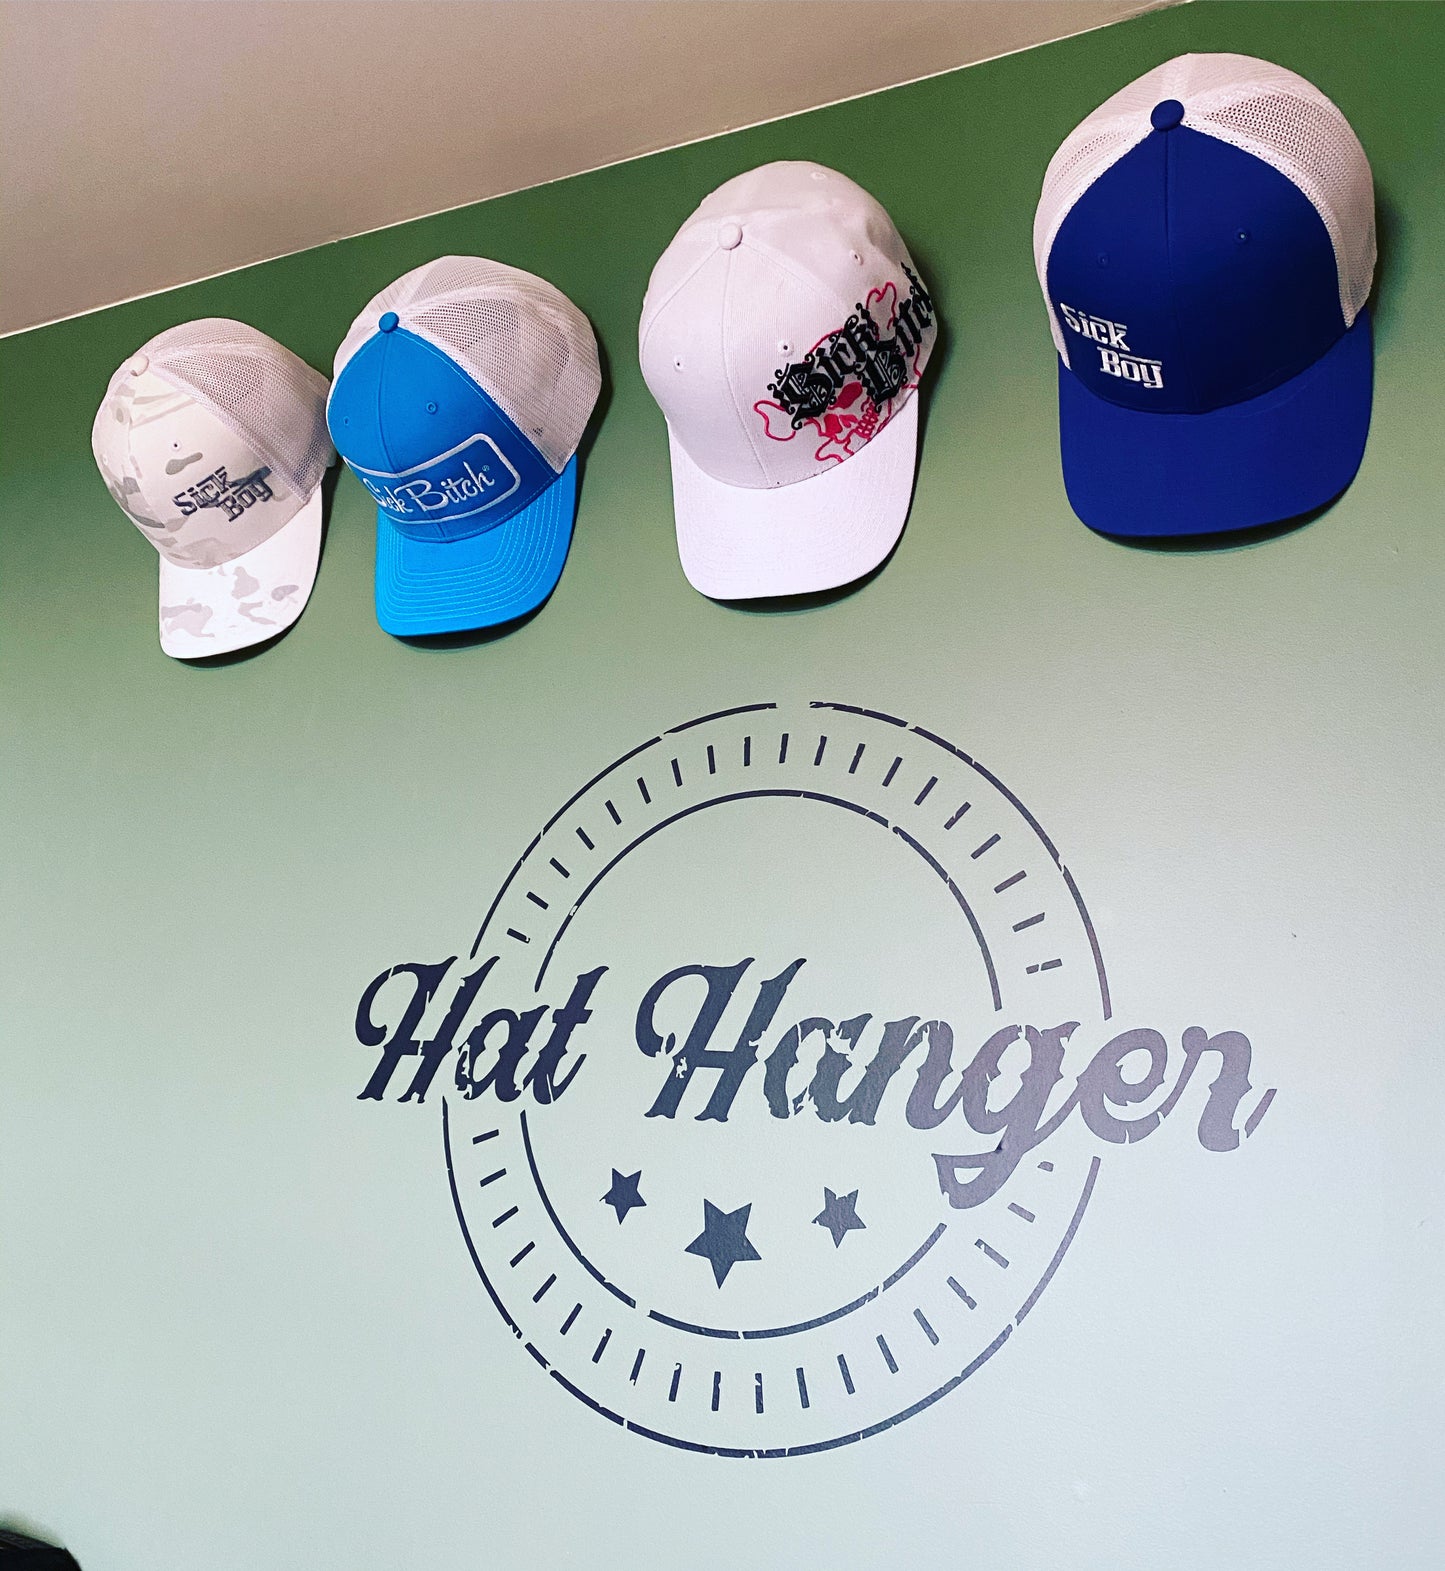 Hat-Hanger (10 Pack) - White Winter